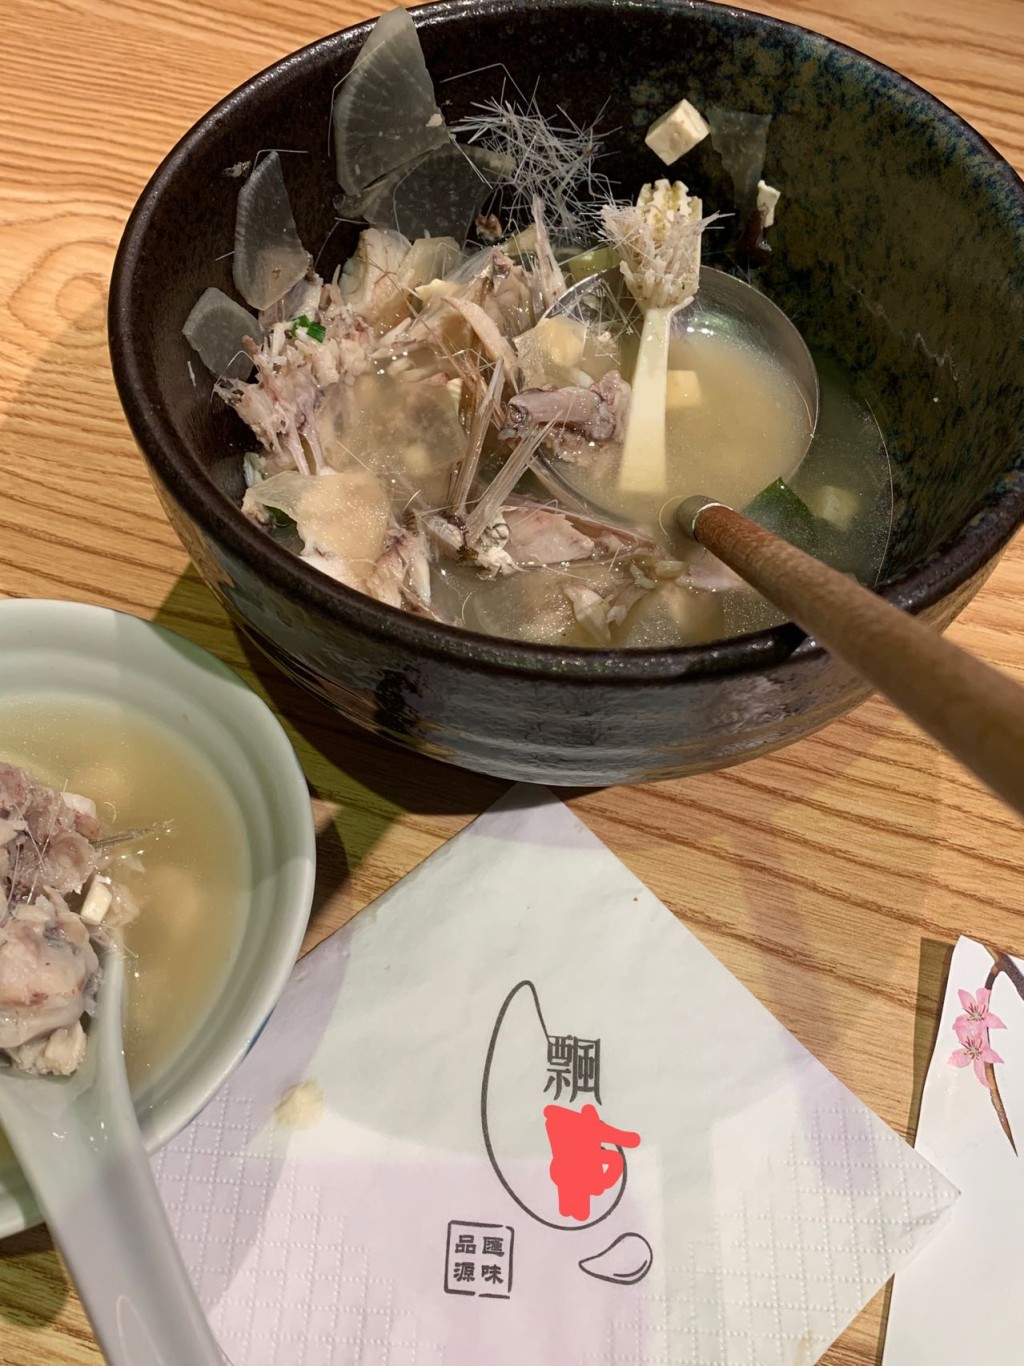 澳門網民光顧日式餐廳飲用魚湯時竟然發現有牙刷。facebook澳門難食中伏團網民圖片